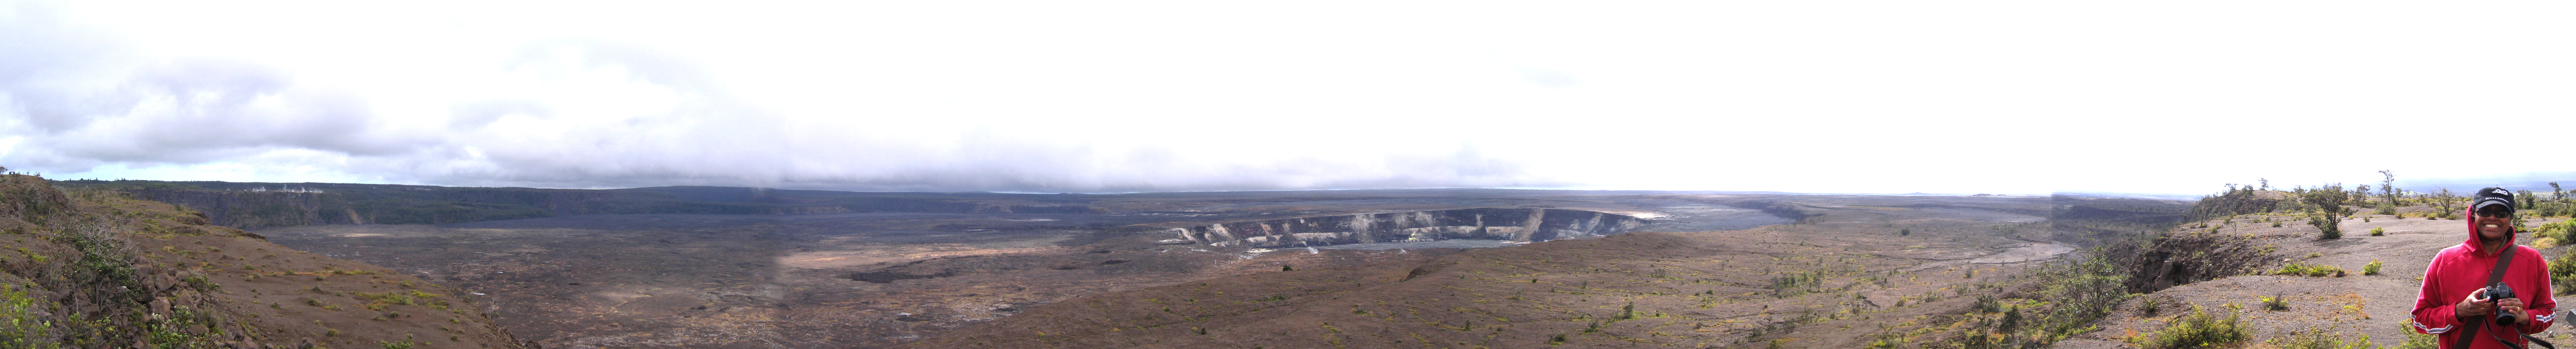 Kilauea 2